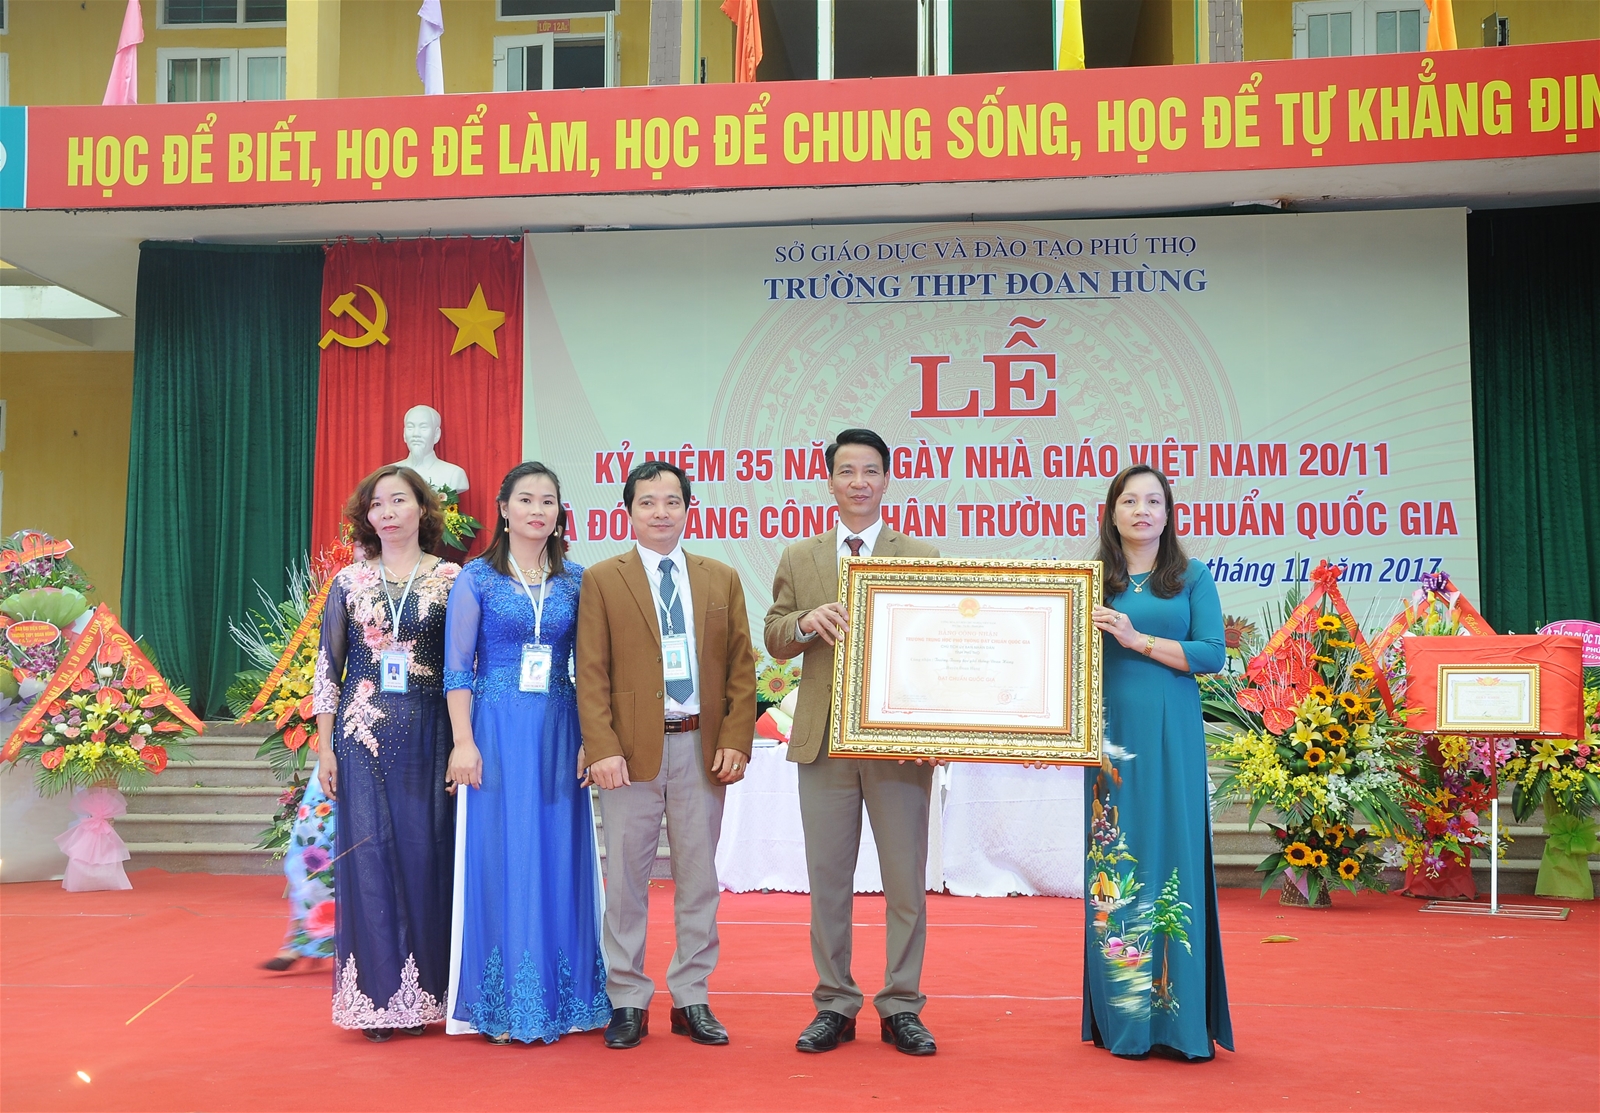 Trường THPT Đoan Hùng long trọng tổ chức lễ kỷ niệm 35 năm ngày nhà giáo Việt Nam 20-11 và đón bằng công nhận trường THPT đạt chuẩn quốc gia